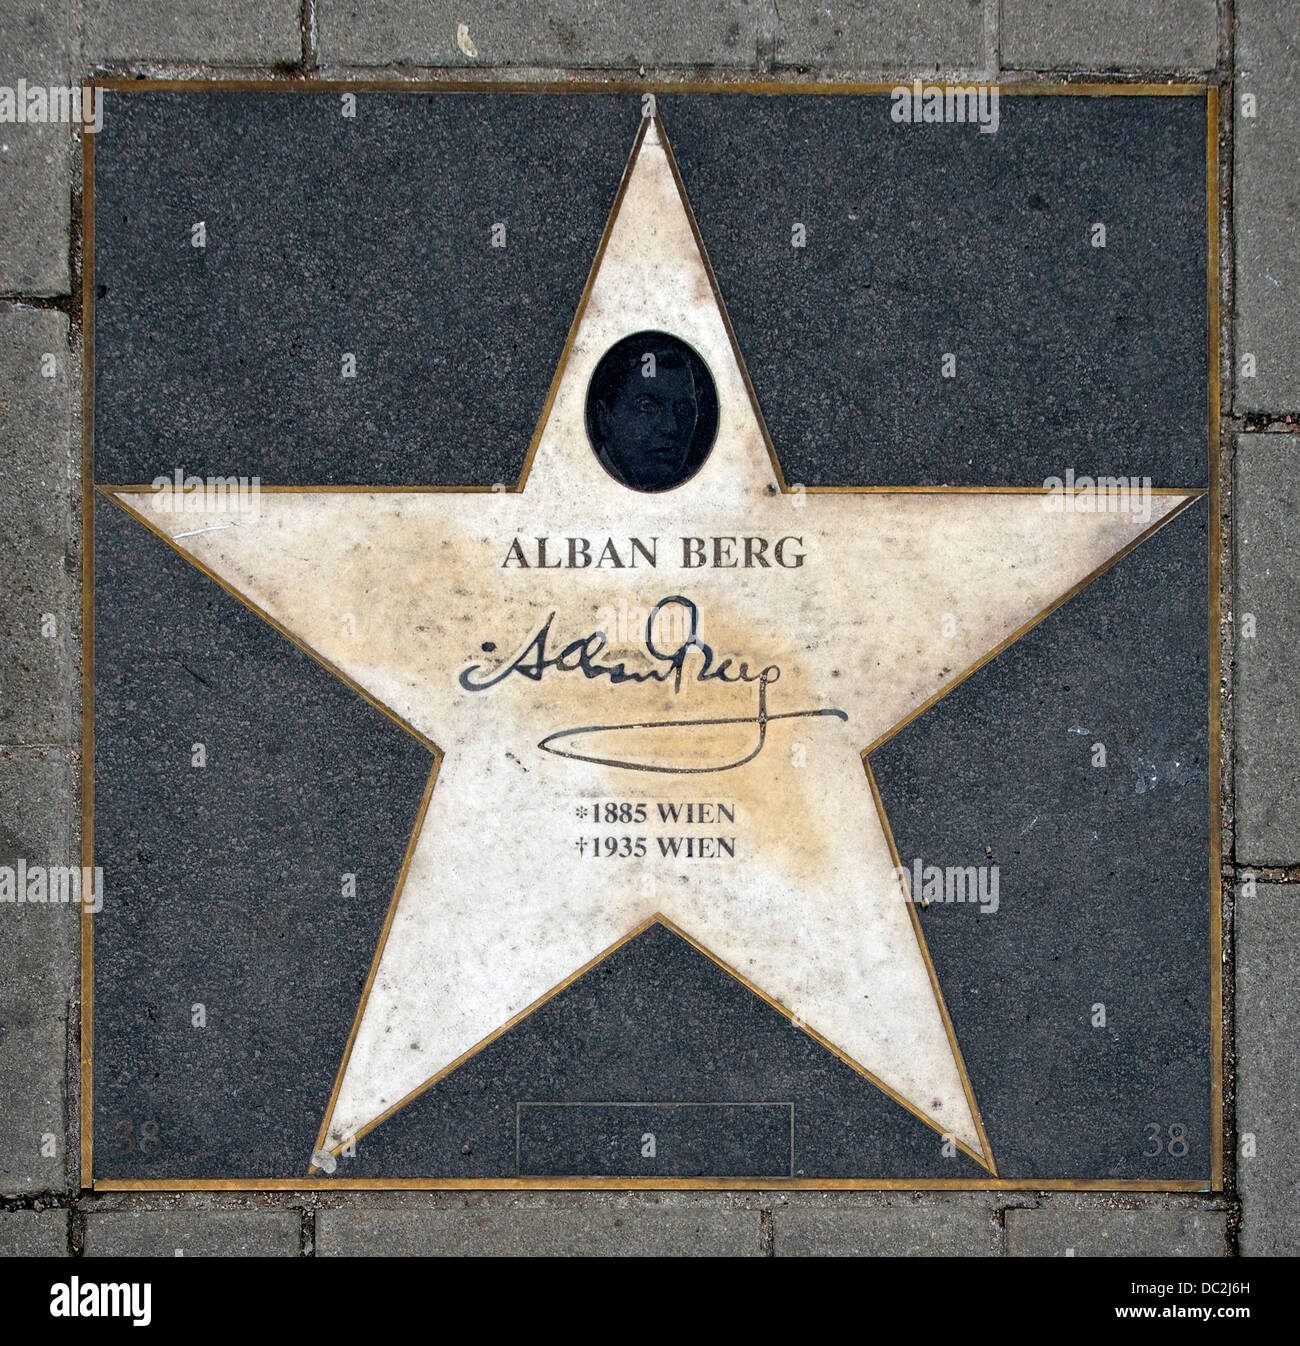 La estrella de Alban Berg, en el suelo delante de la Ópera Estatal de Viena, Austria Foto de stock